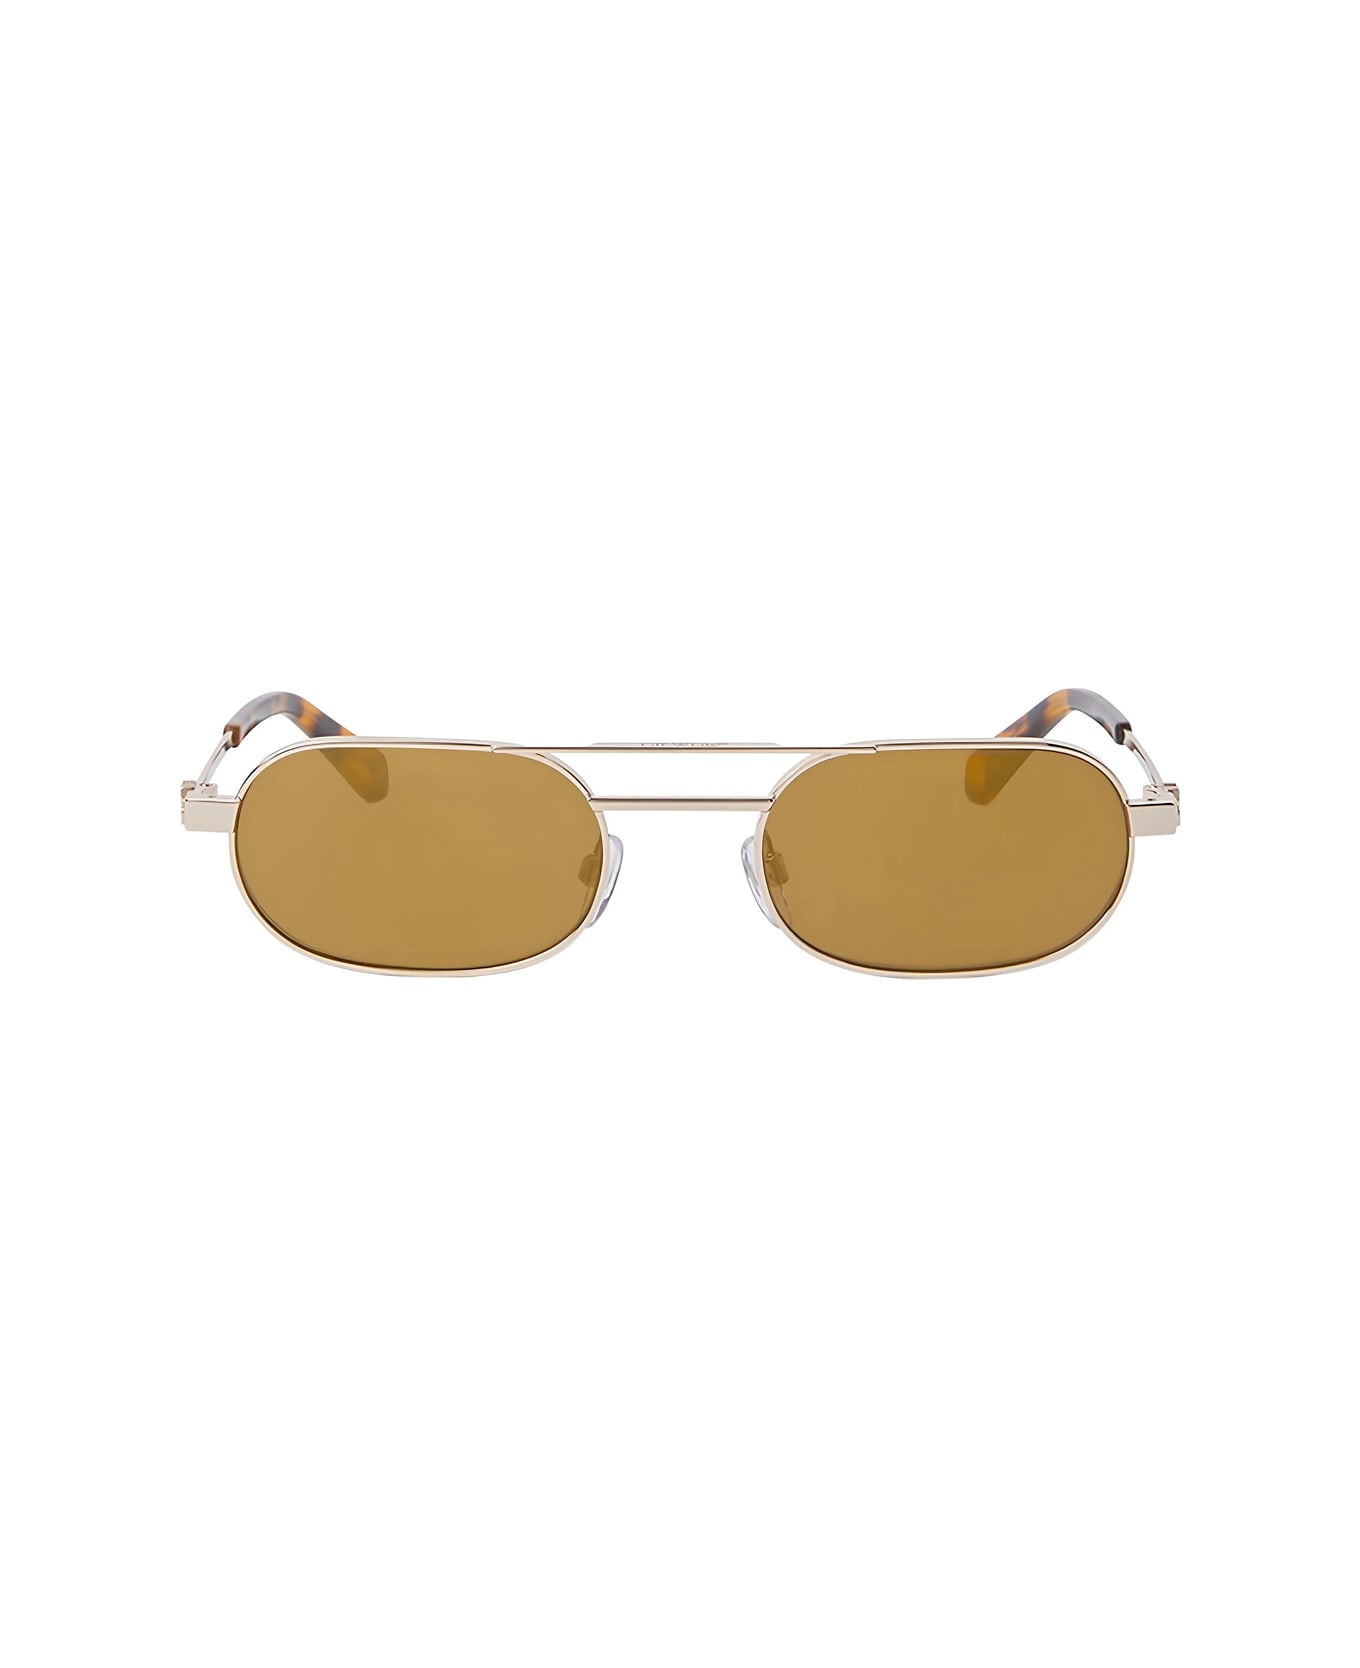 Off-White Oeri123 Vaiden 7676 Gold Sunglasses - Oro